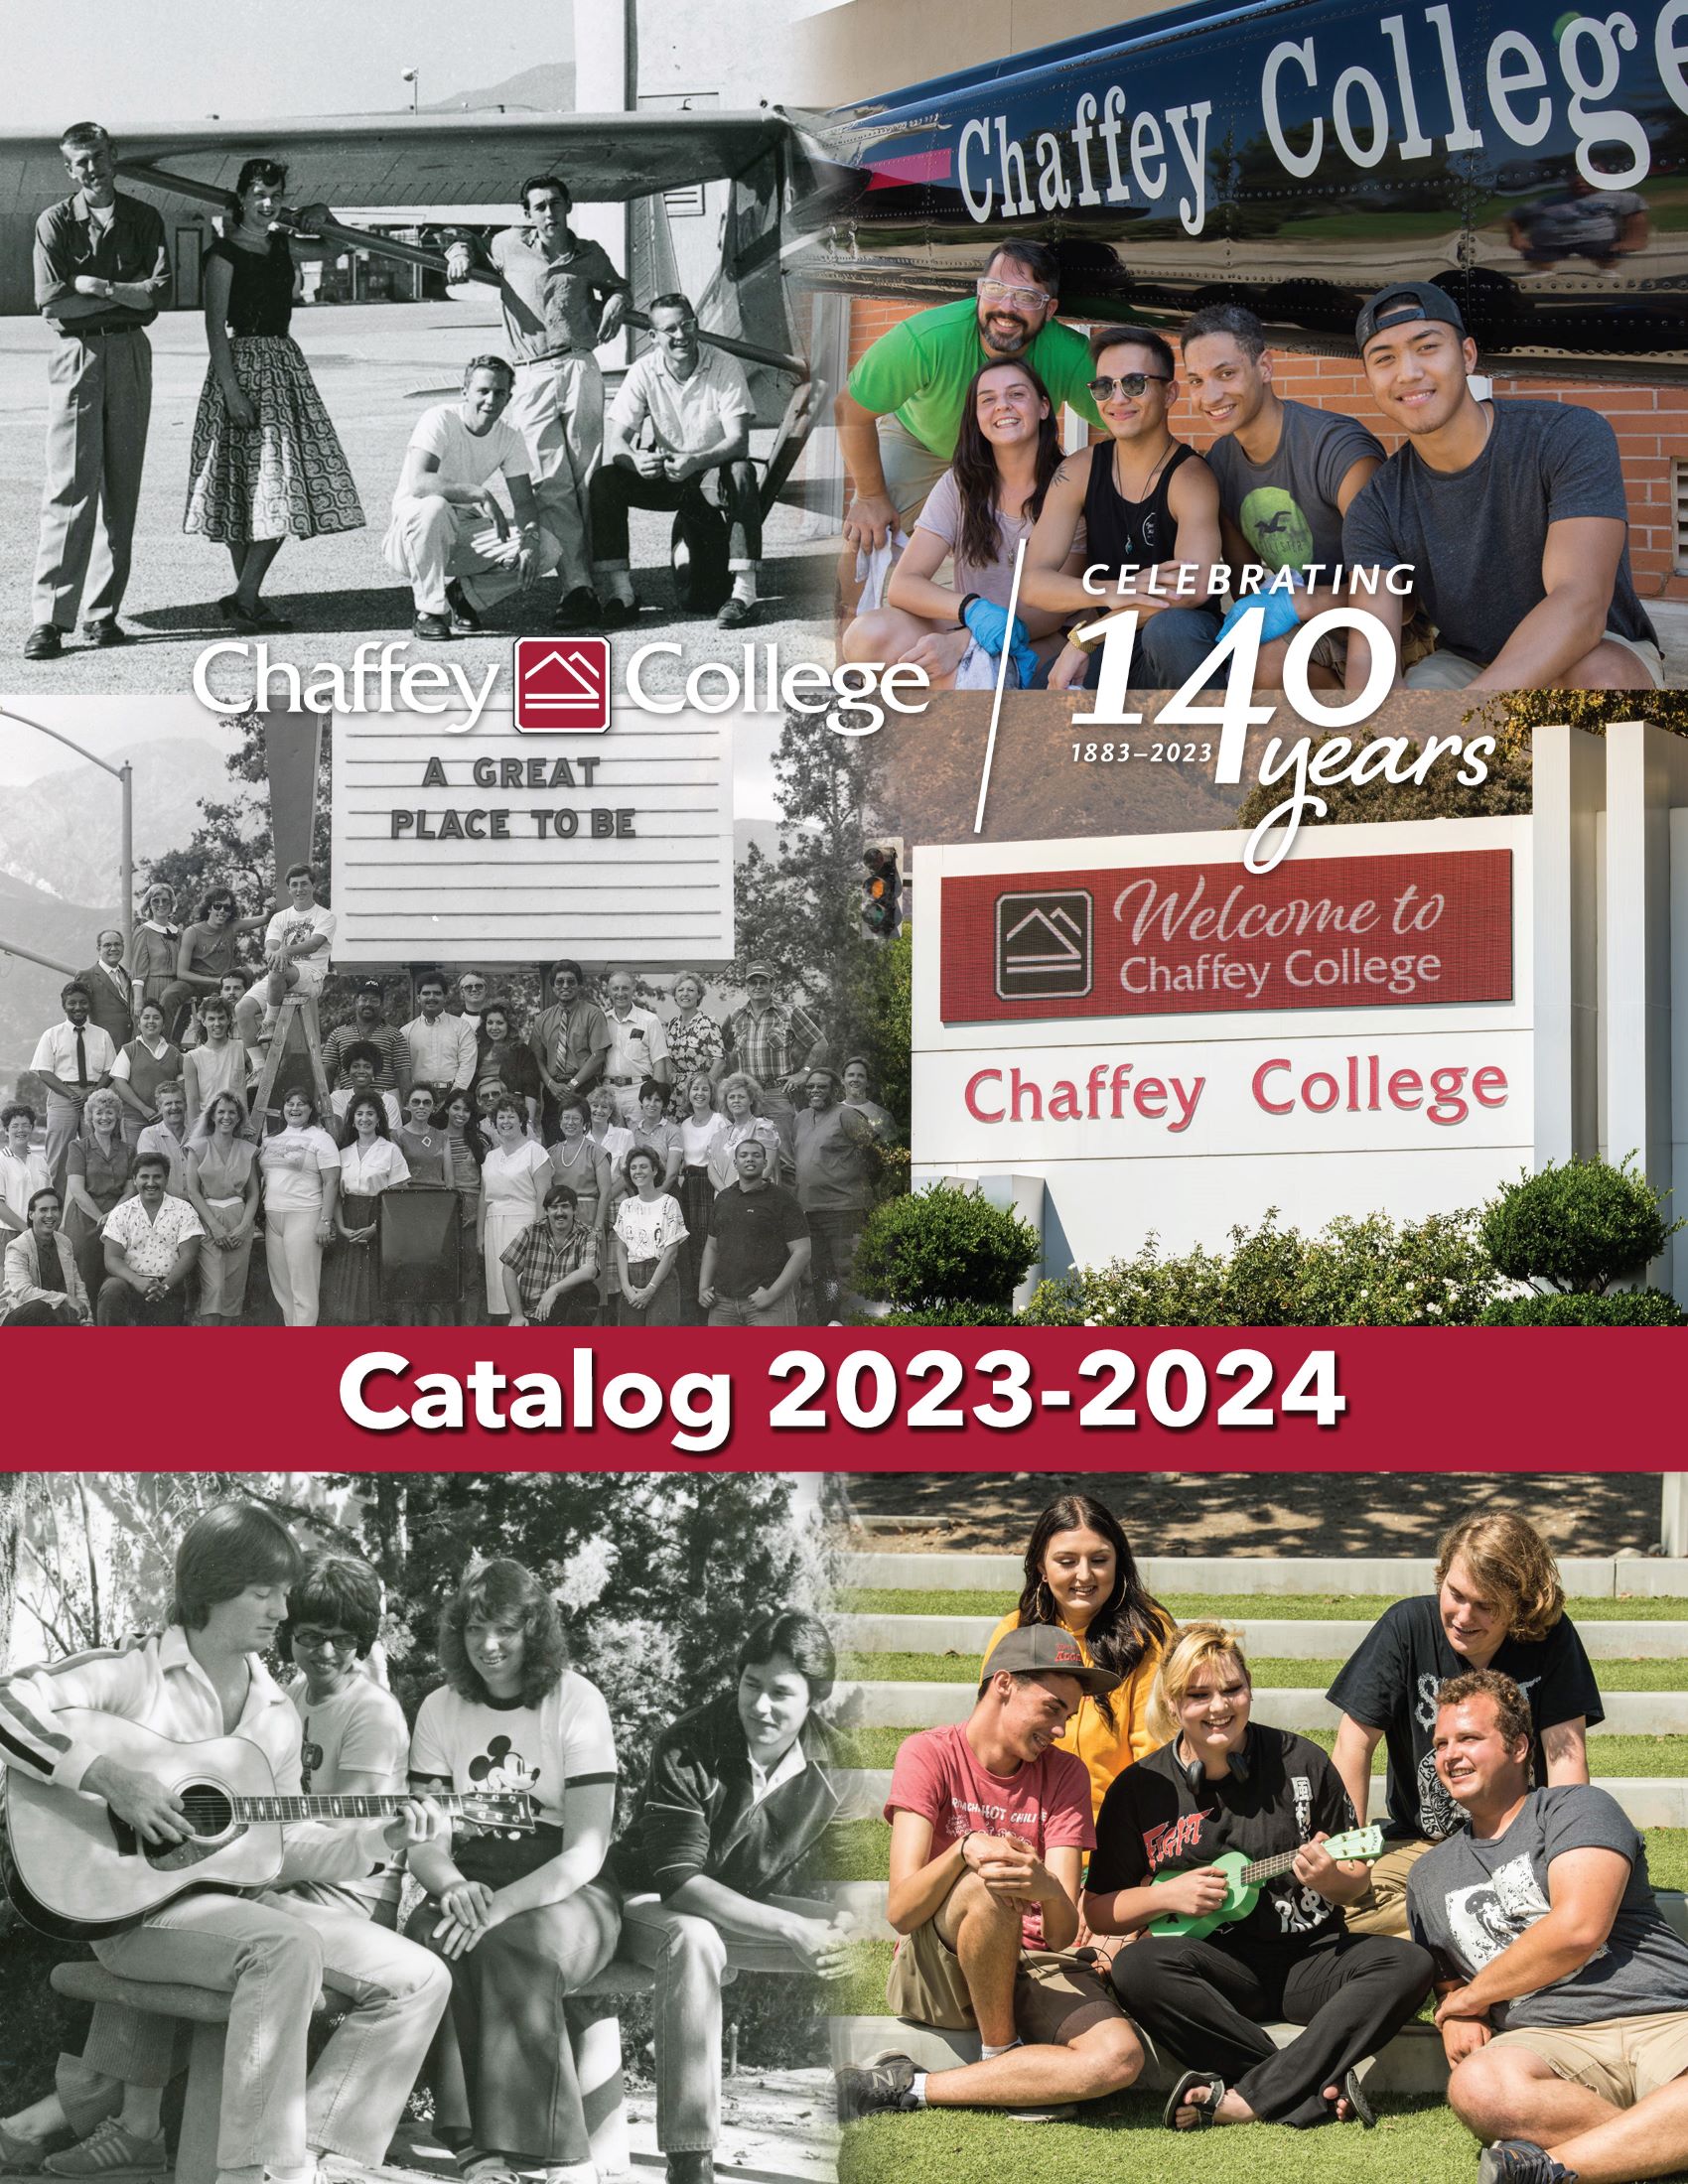 2022-2023 College Catalog